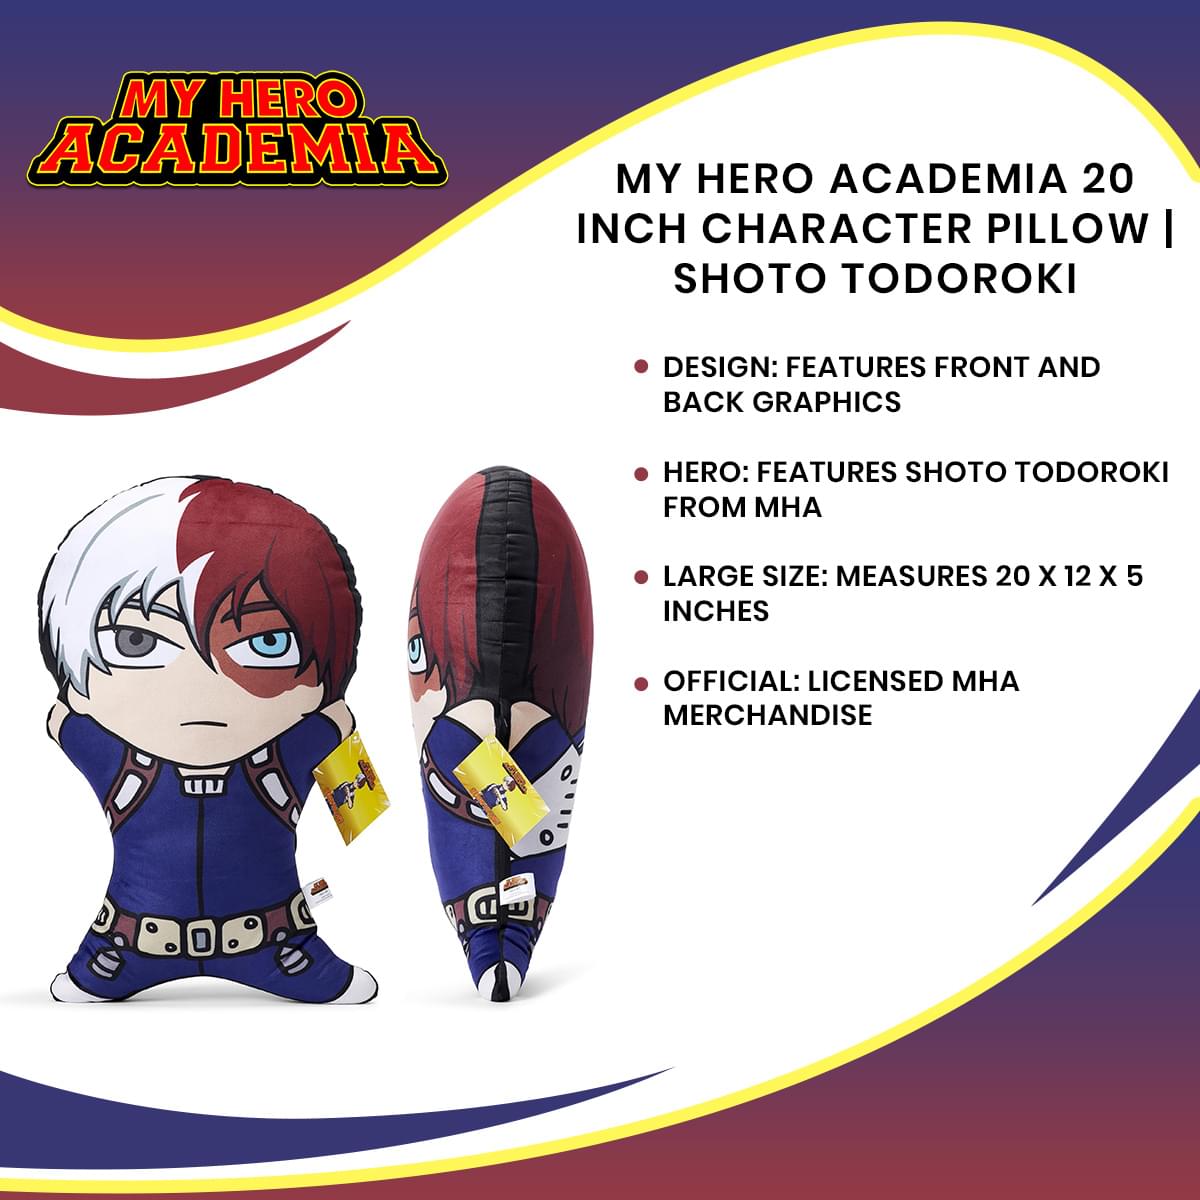 My Hero Academia 20 Inch Character Pillow | Shoto Todoroki